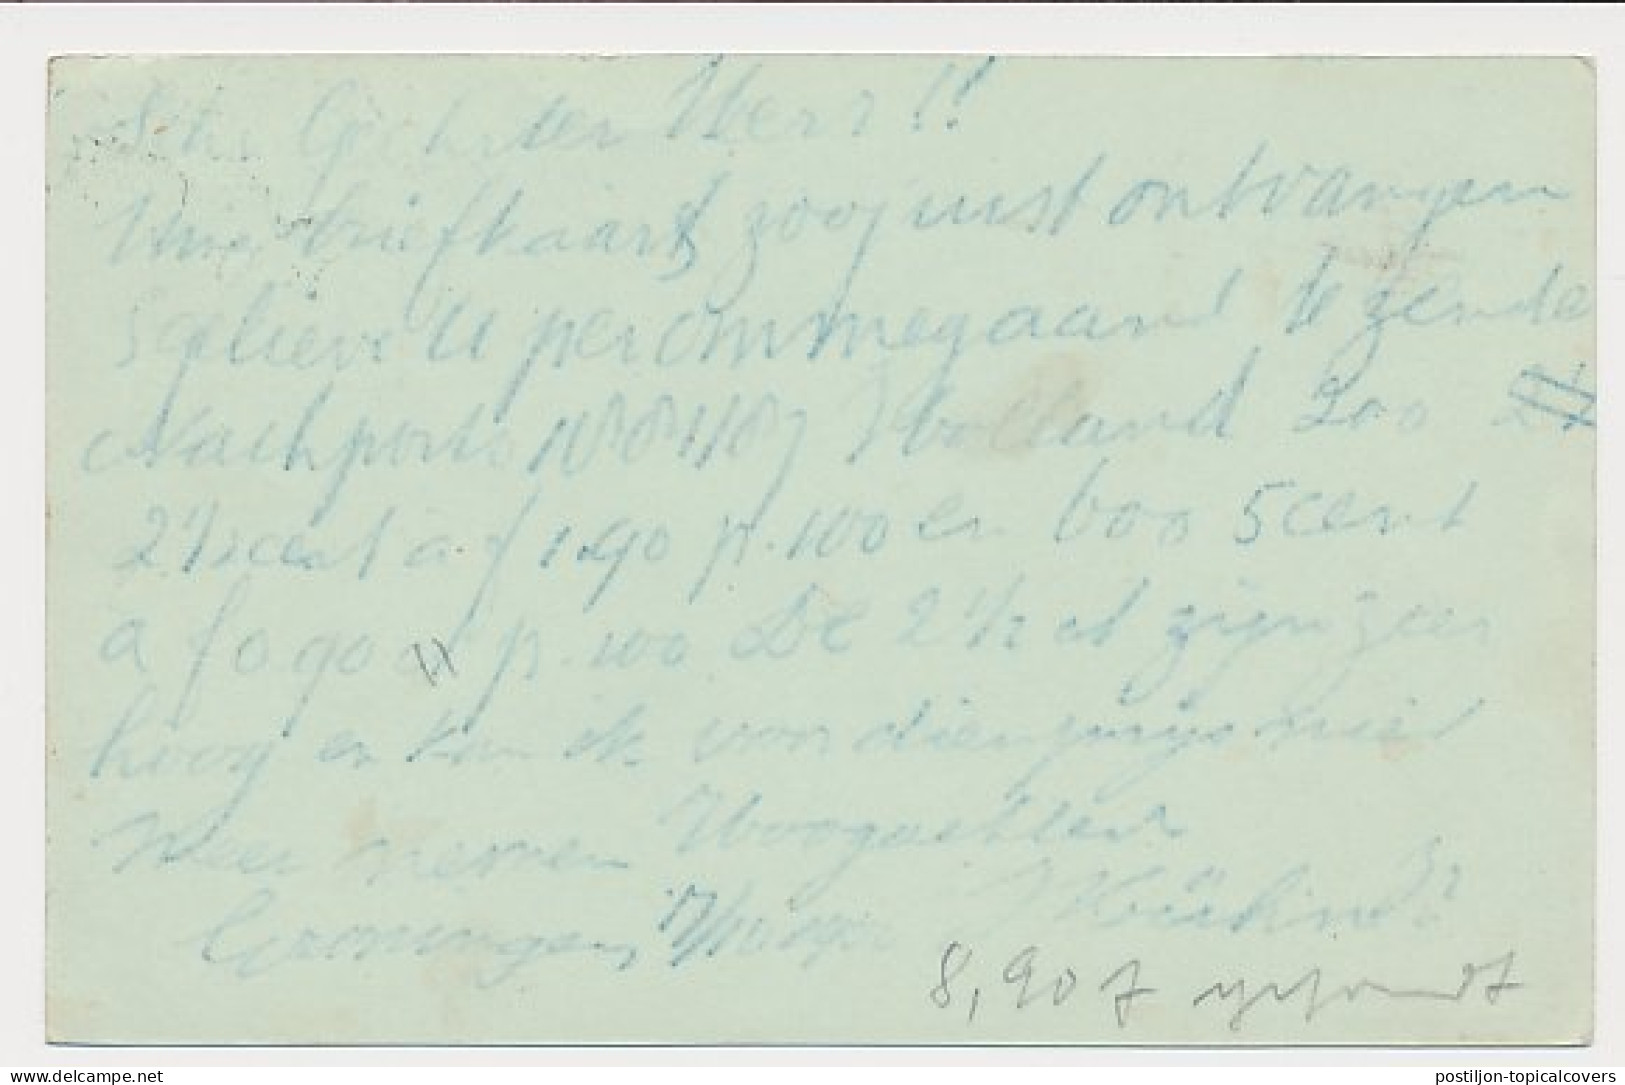 Briefkaart G. 51 Groningen - Veendam 1900 - Ganzsachen